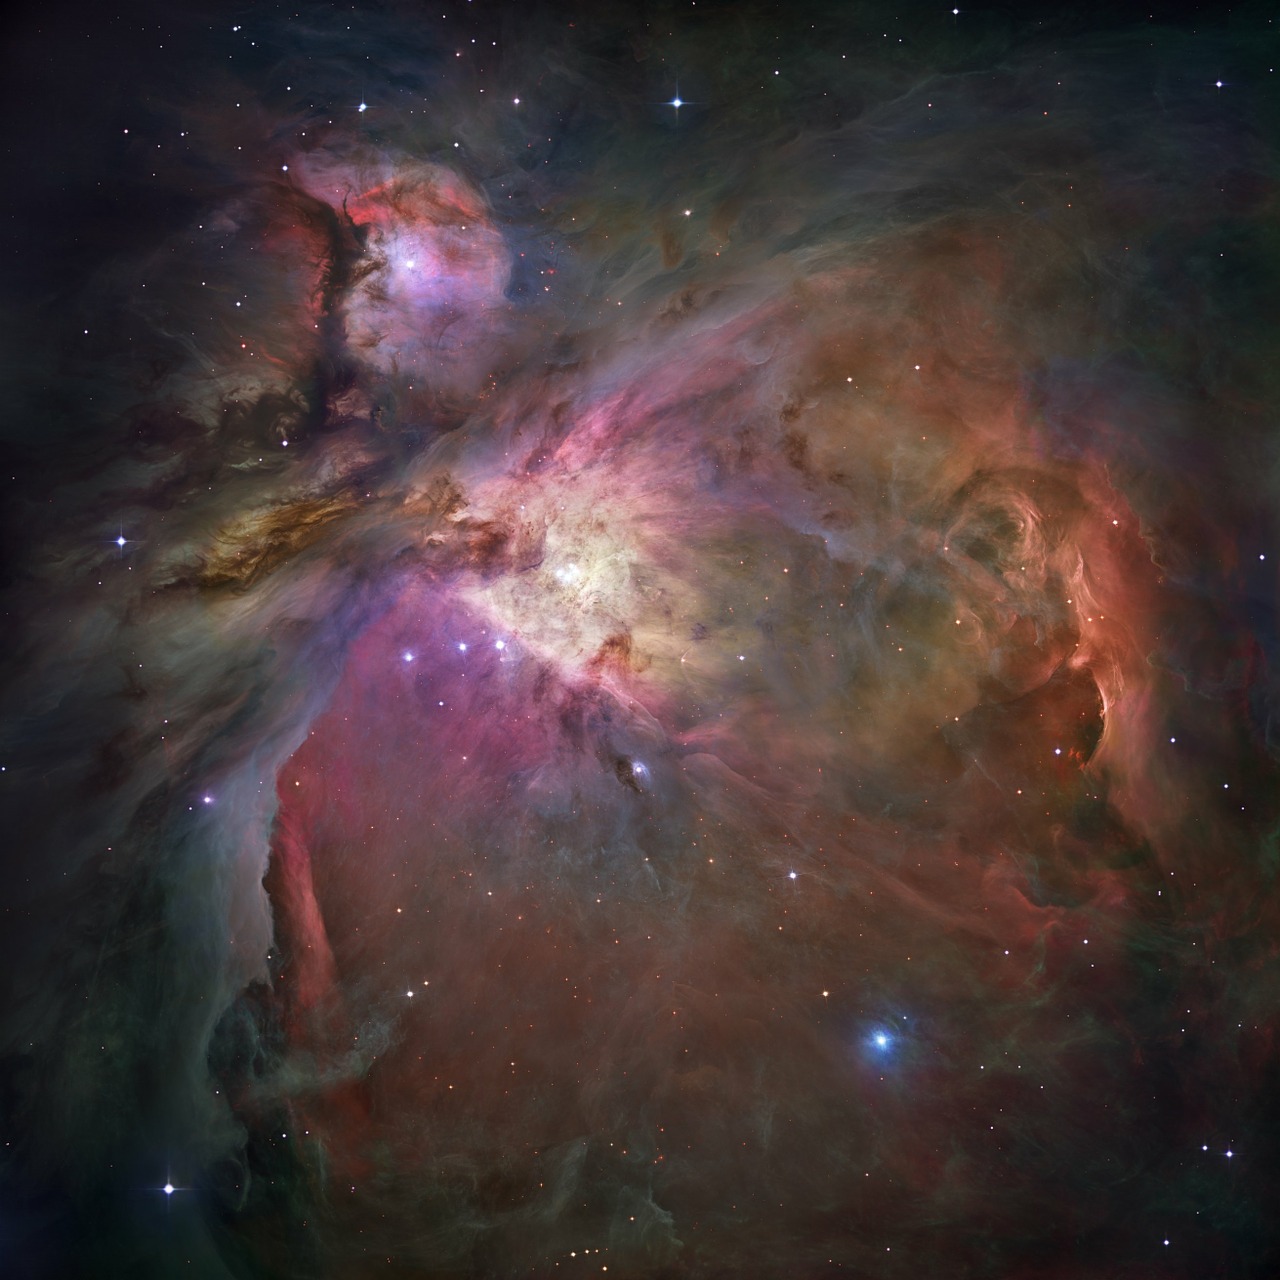 orion nebula emission nebula constellation orion free photo